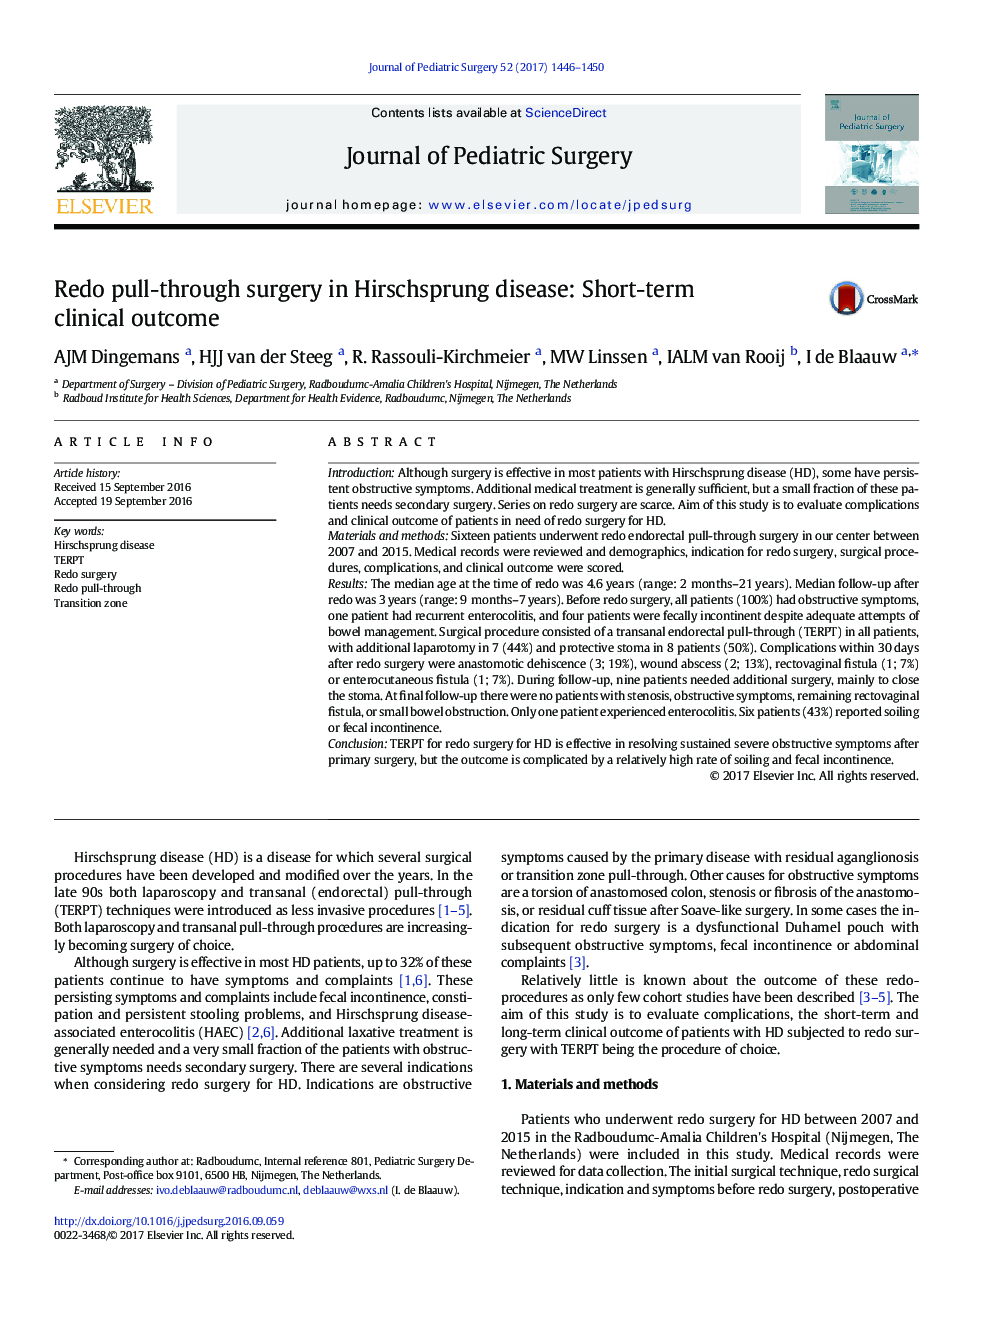 ClinicalRedo pull-through surgery in Hirschsprung disease: Short-term clinical outcome